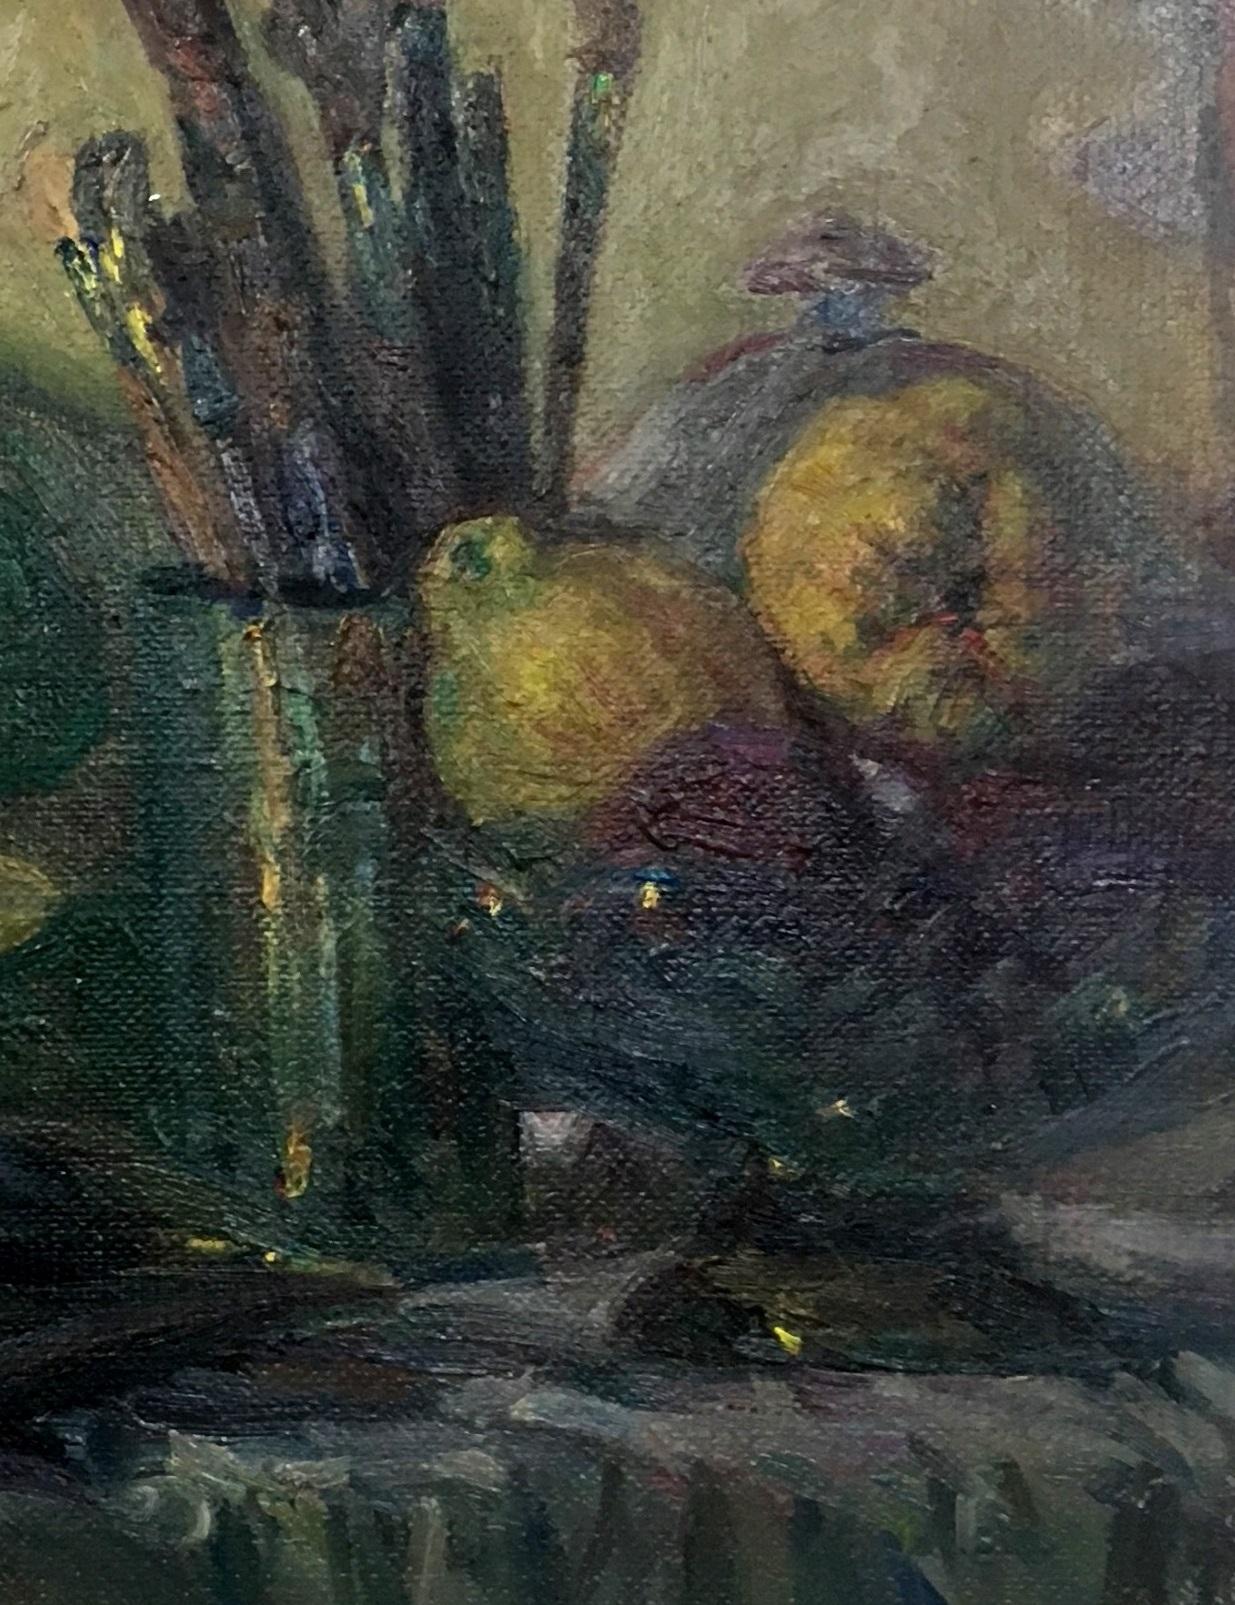 Sola Puig    Buch  Brusch- und Obstschalen  impressionistisches Ölgemälde auf Leinwand (Impressionismus), Painting, von Joan SOLA PUIG